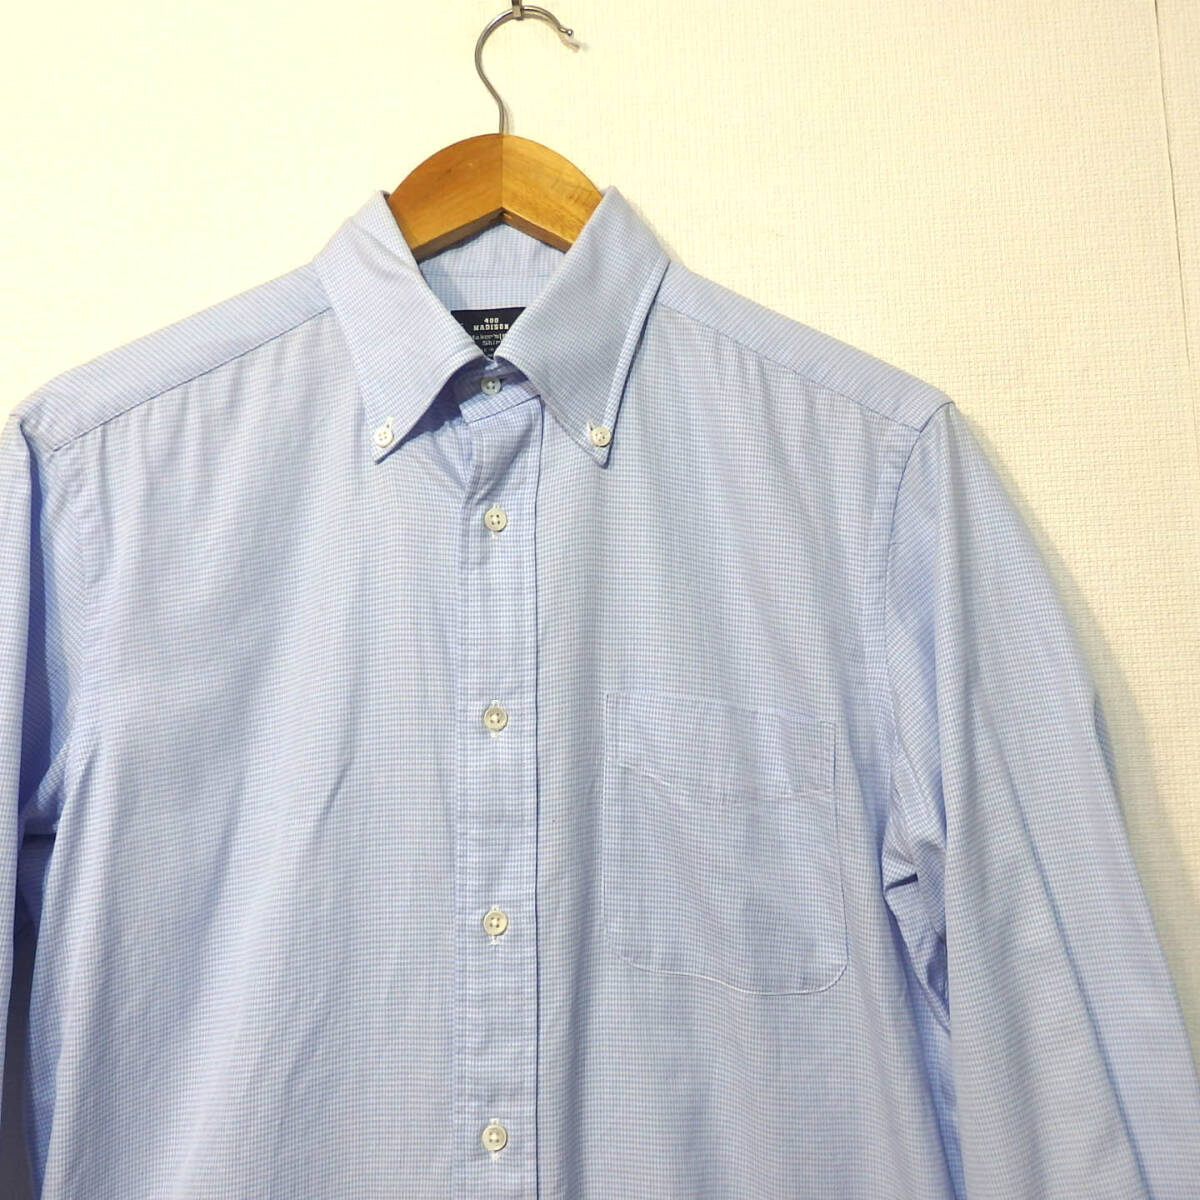 【送料無料】メーカーズシャツ鎌倉ドレスシャツ/水色 チェック柄 400madison 39-83 MAKER'S SHIRT KAMAKURAの画像2